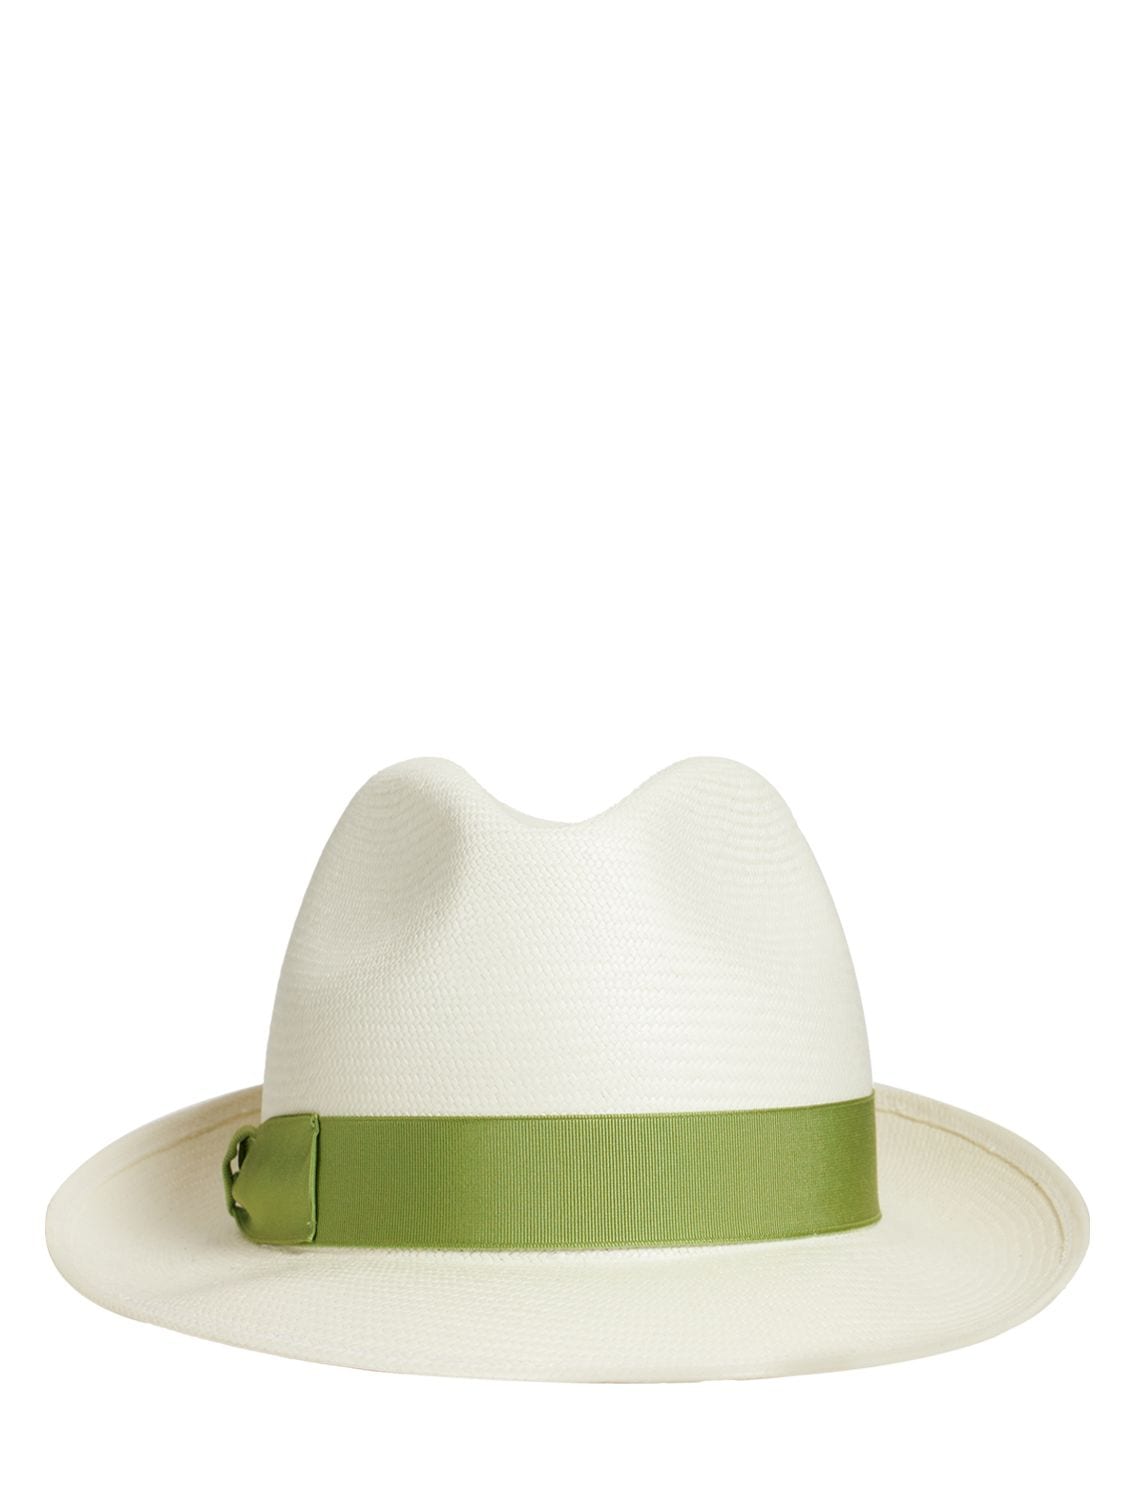 BORSALINO Monica Fine Straw Panama Hat